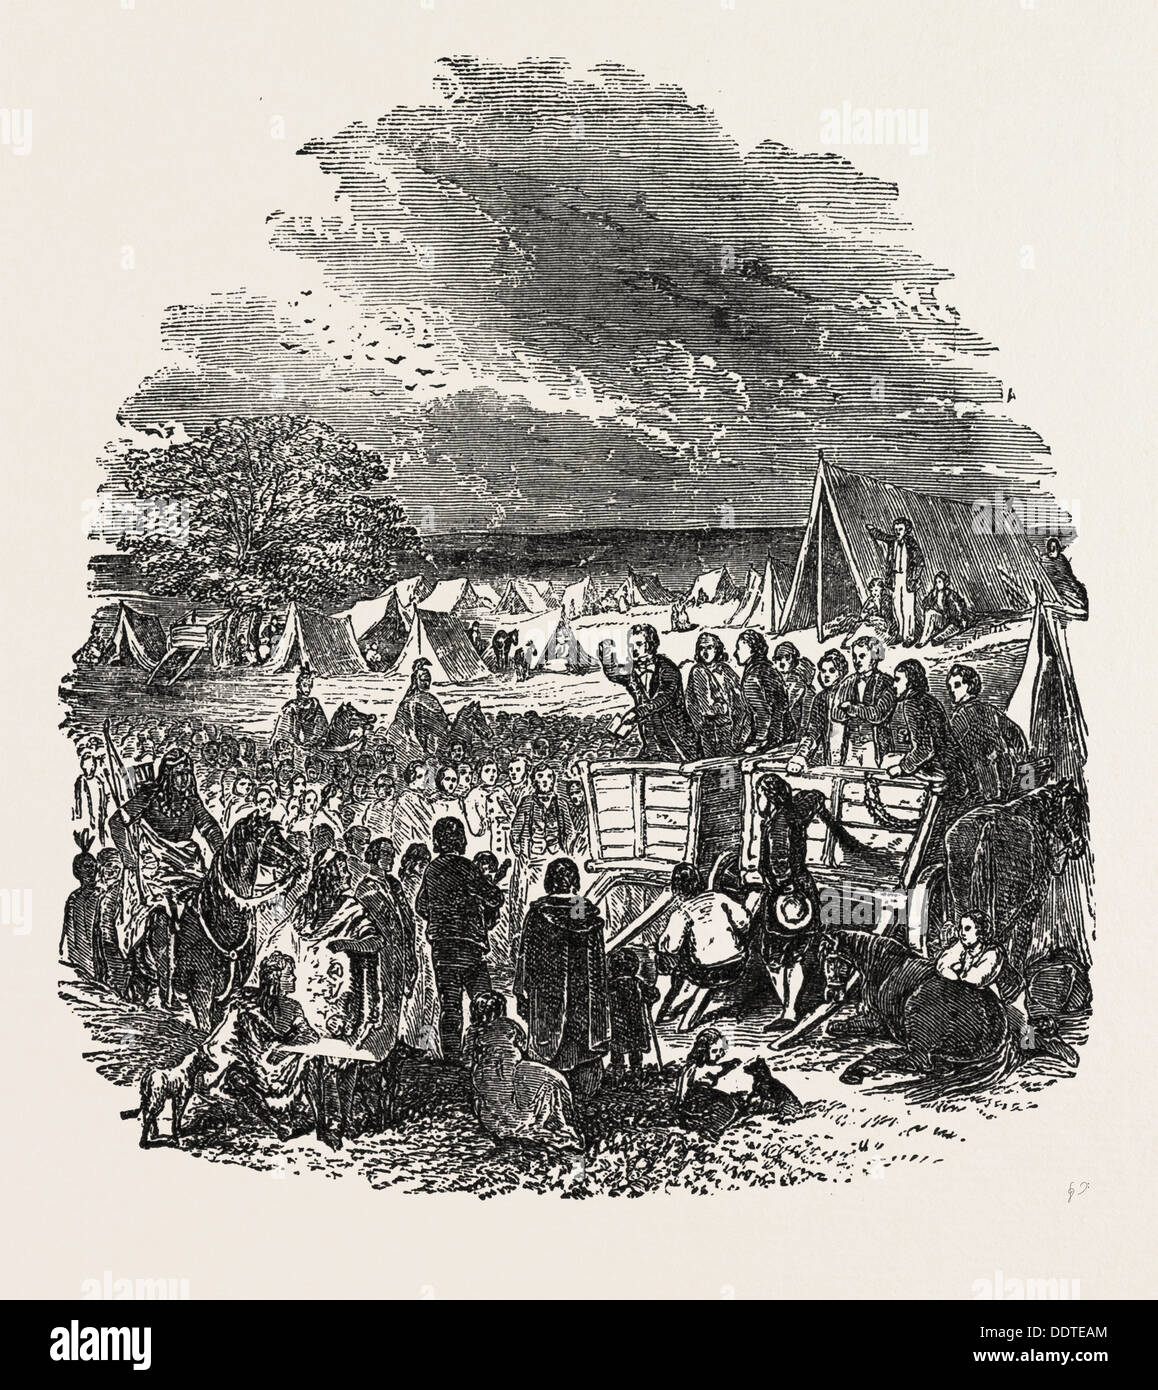 JOSEPH SMITH predicare nel deserto., mormoni, 1851 l'incisione Foto Stock